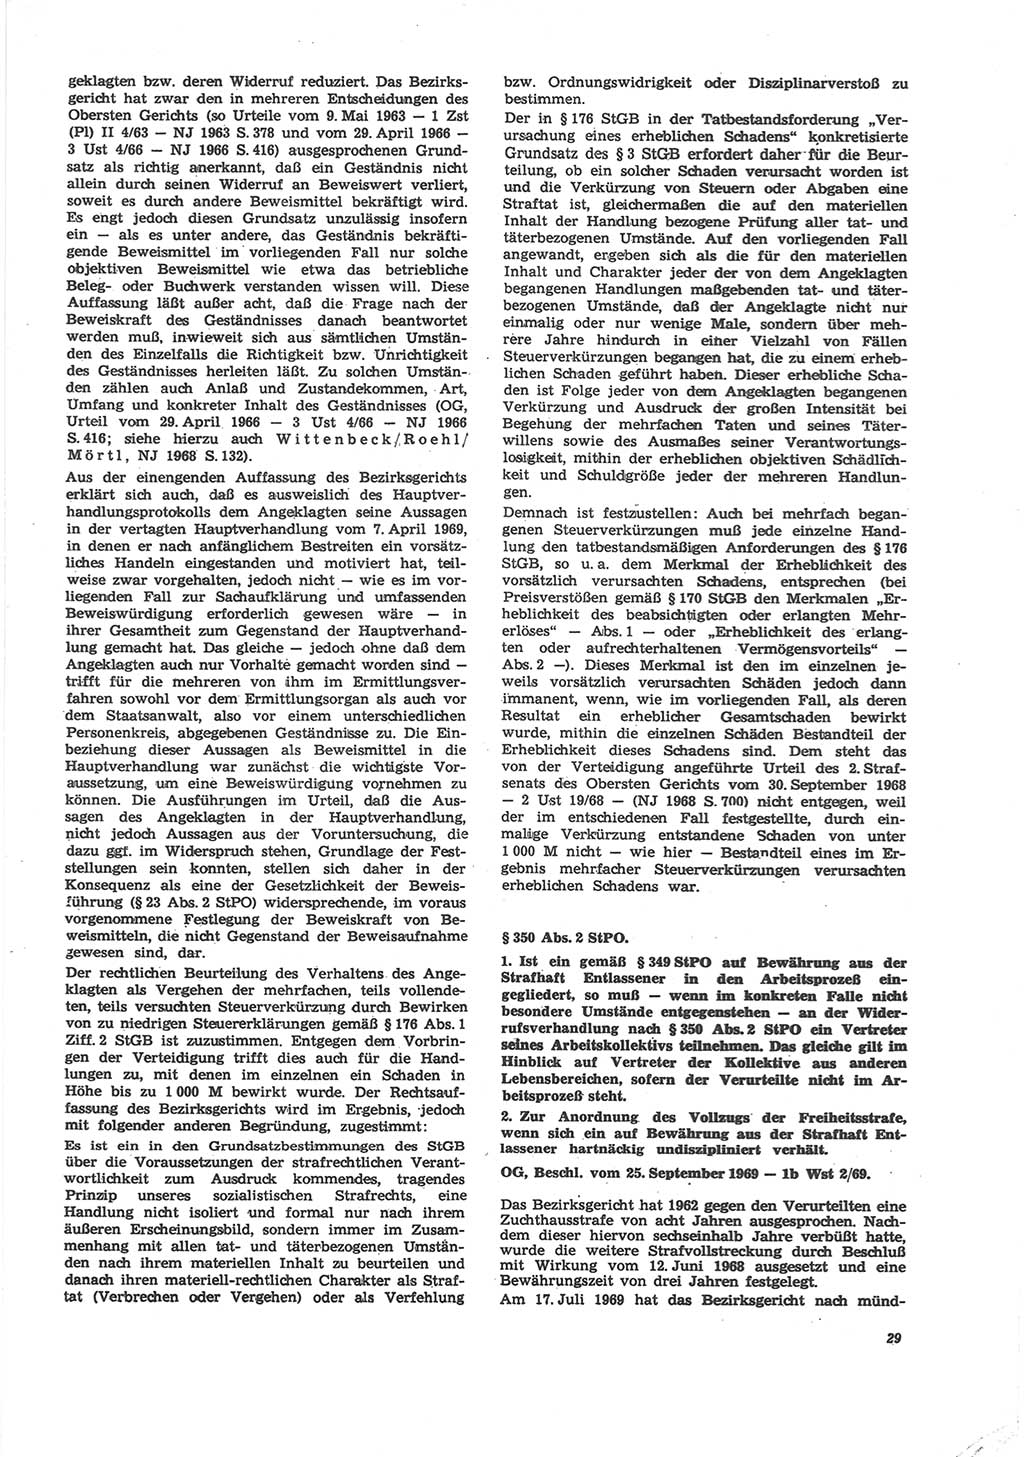 Neue Justiz (NJ), Zeitschrift für Recht und Rechtswissenschaft [Deutsche Demokratische Republik (DDR)], 24. Jahrgang 1970, Seite 29 (NJ DDR 1970, S. 29)